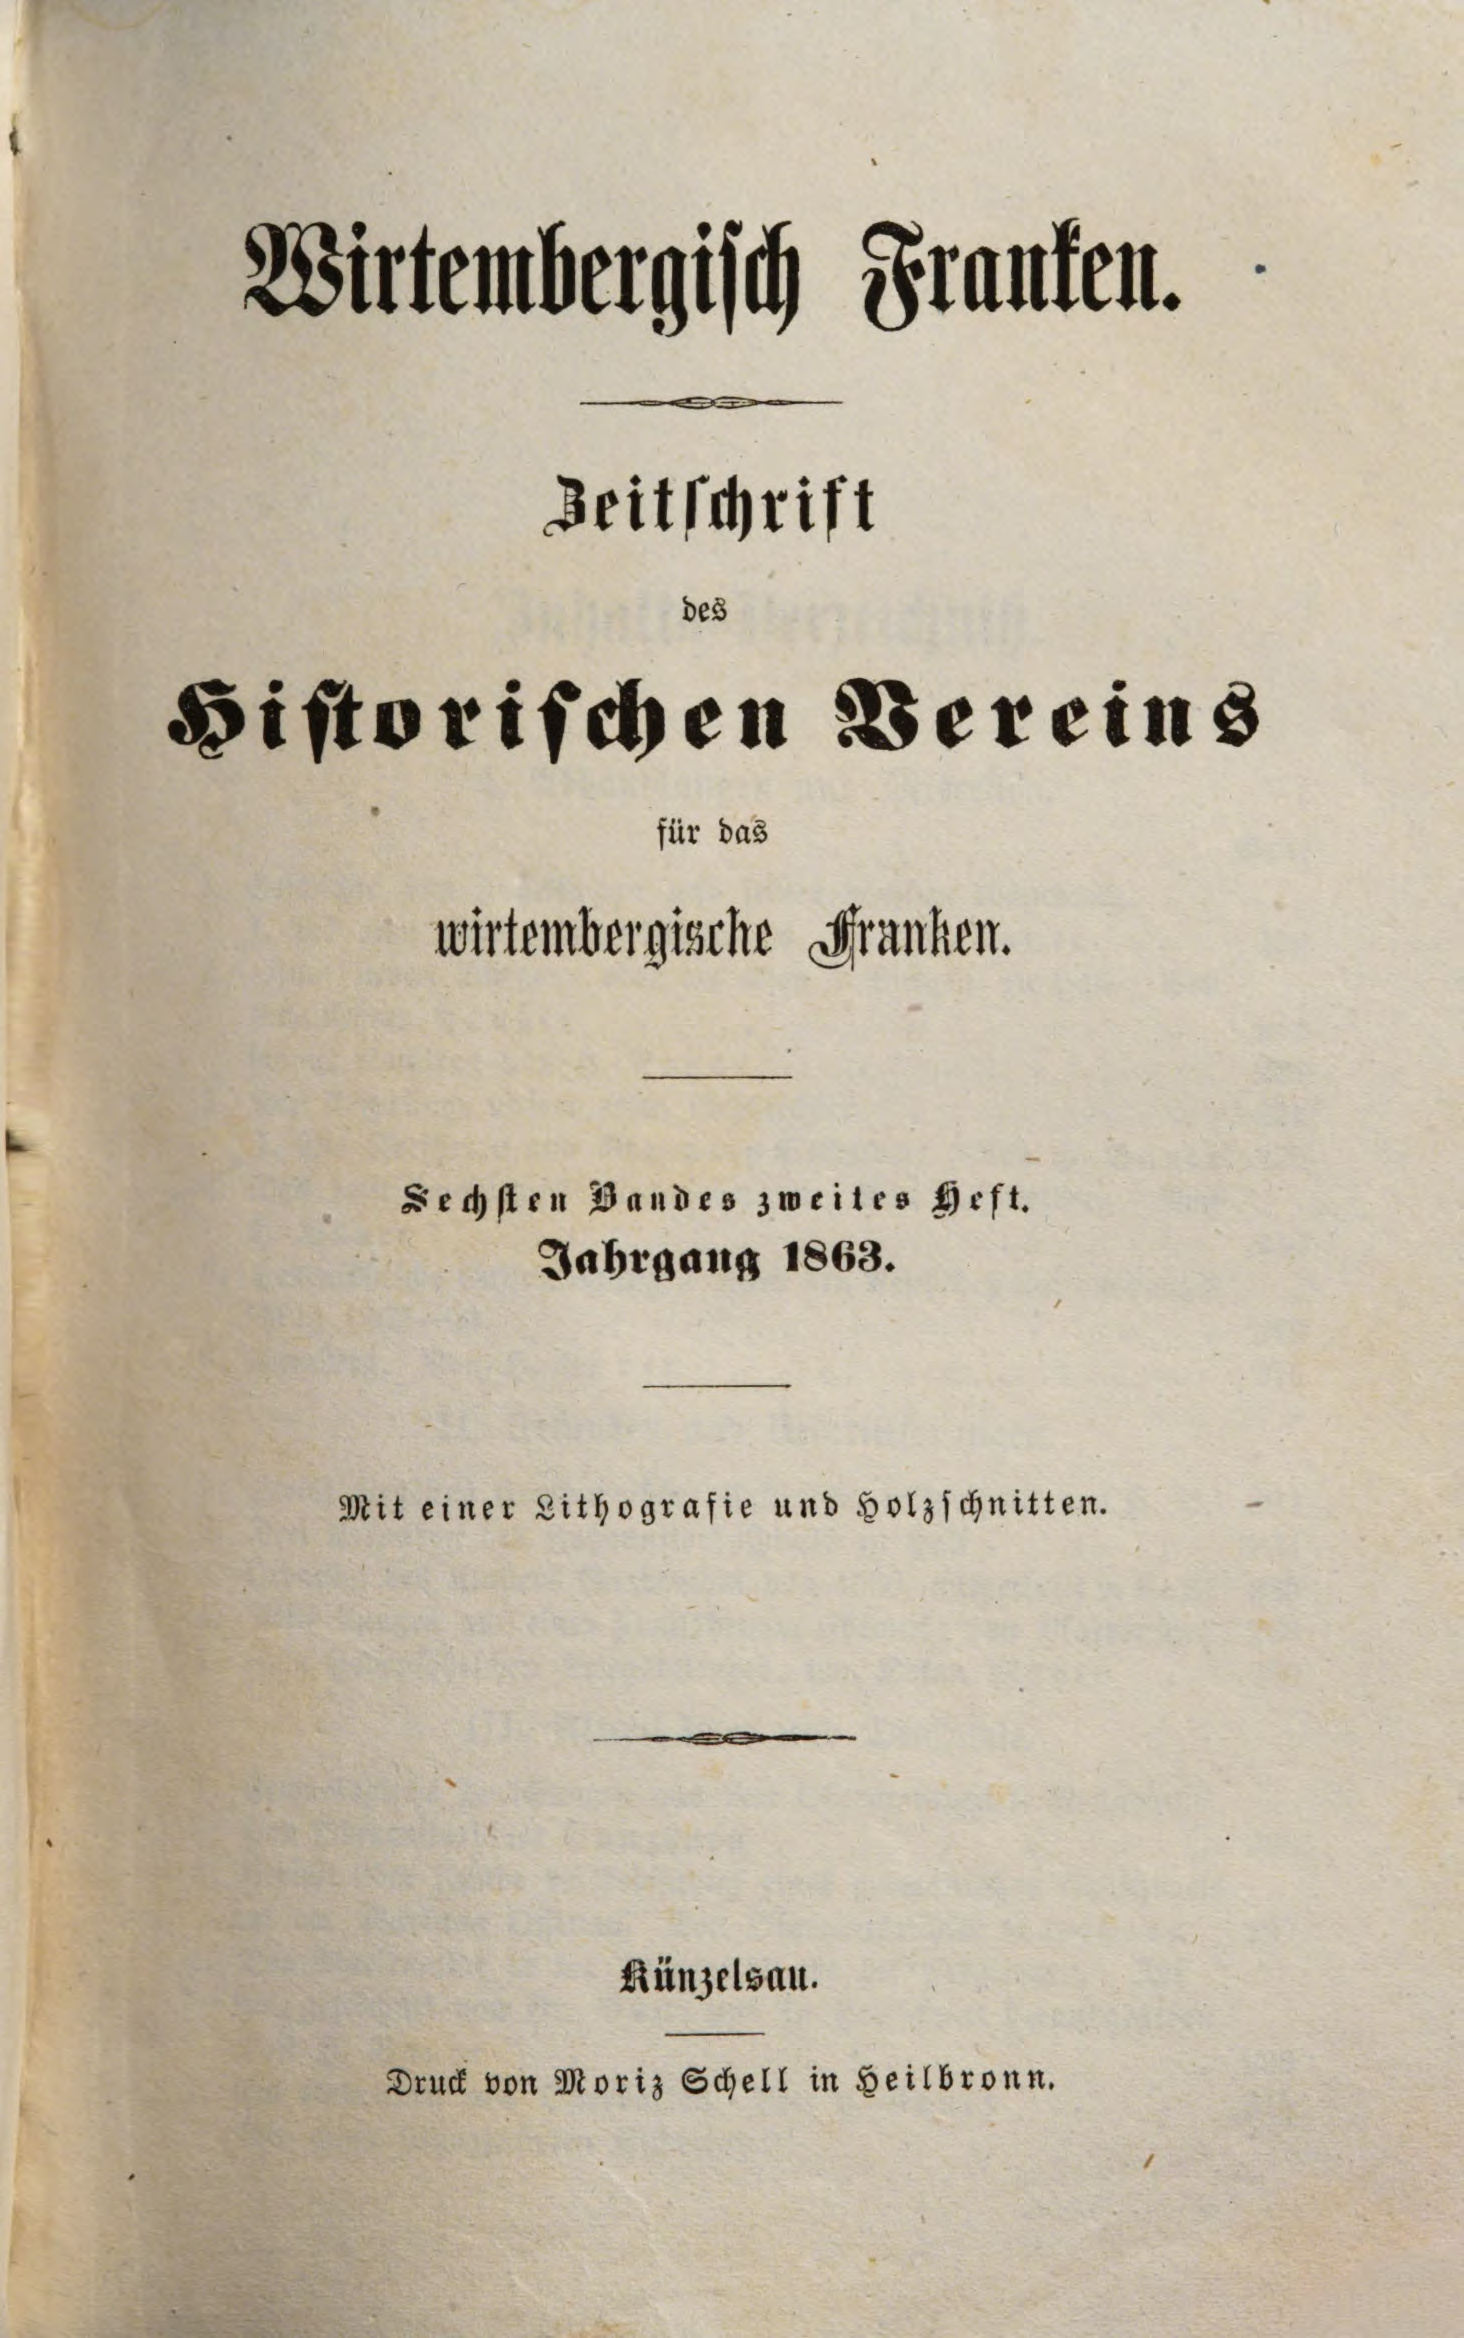                     Ansehen Bd. 6 Nr. 2 (1863): Zeitschrift des Historischen Vereins für das Württembergische Franken
                